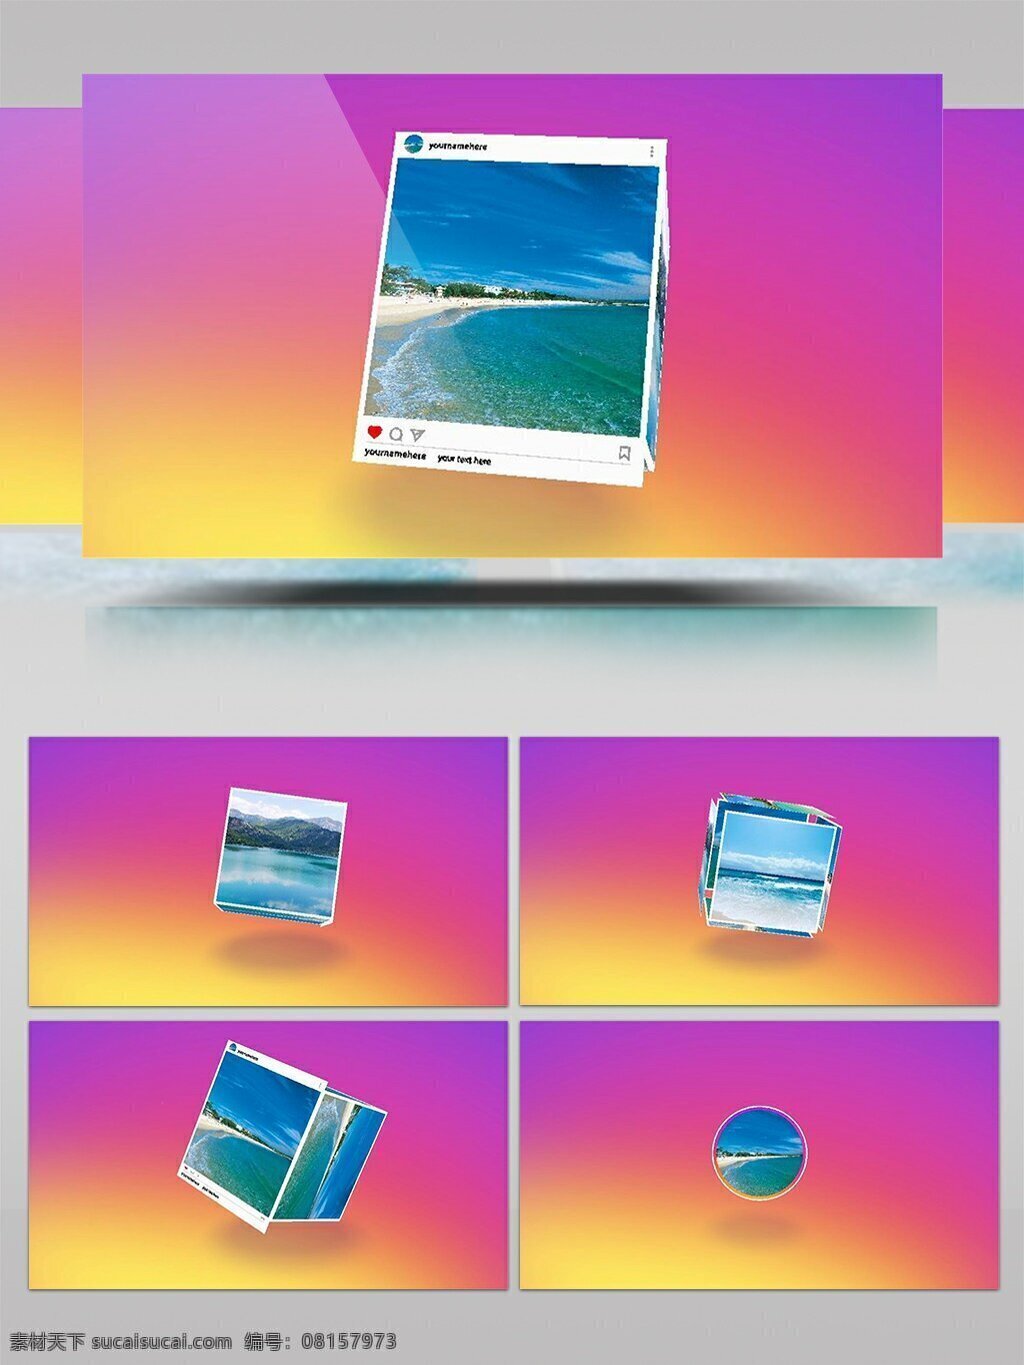 社交 照片 组成 3d 盒子 进行 展示 ae 源文件 相册 风景 模板